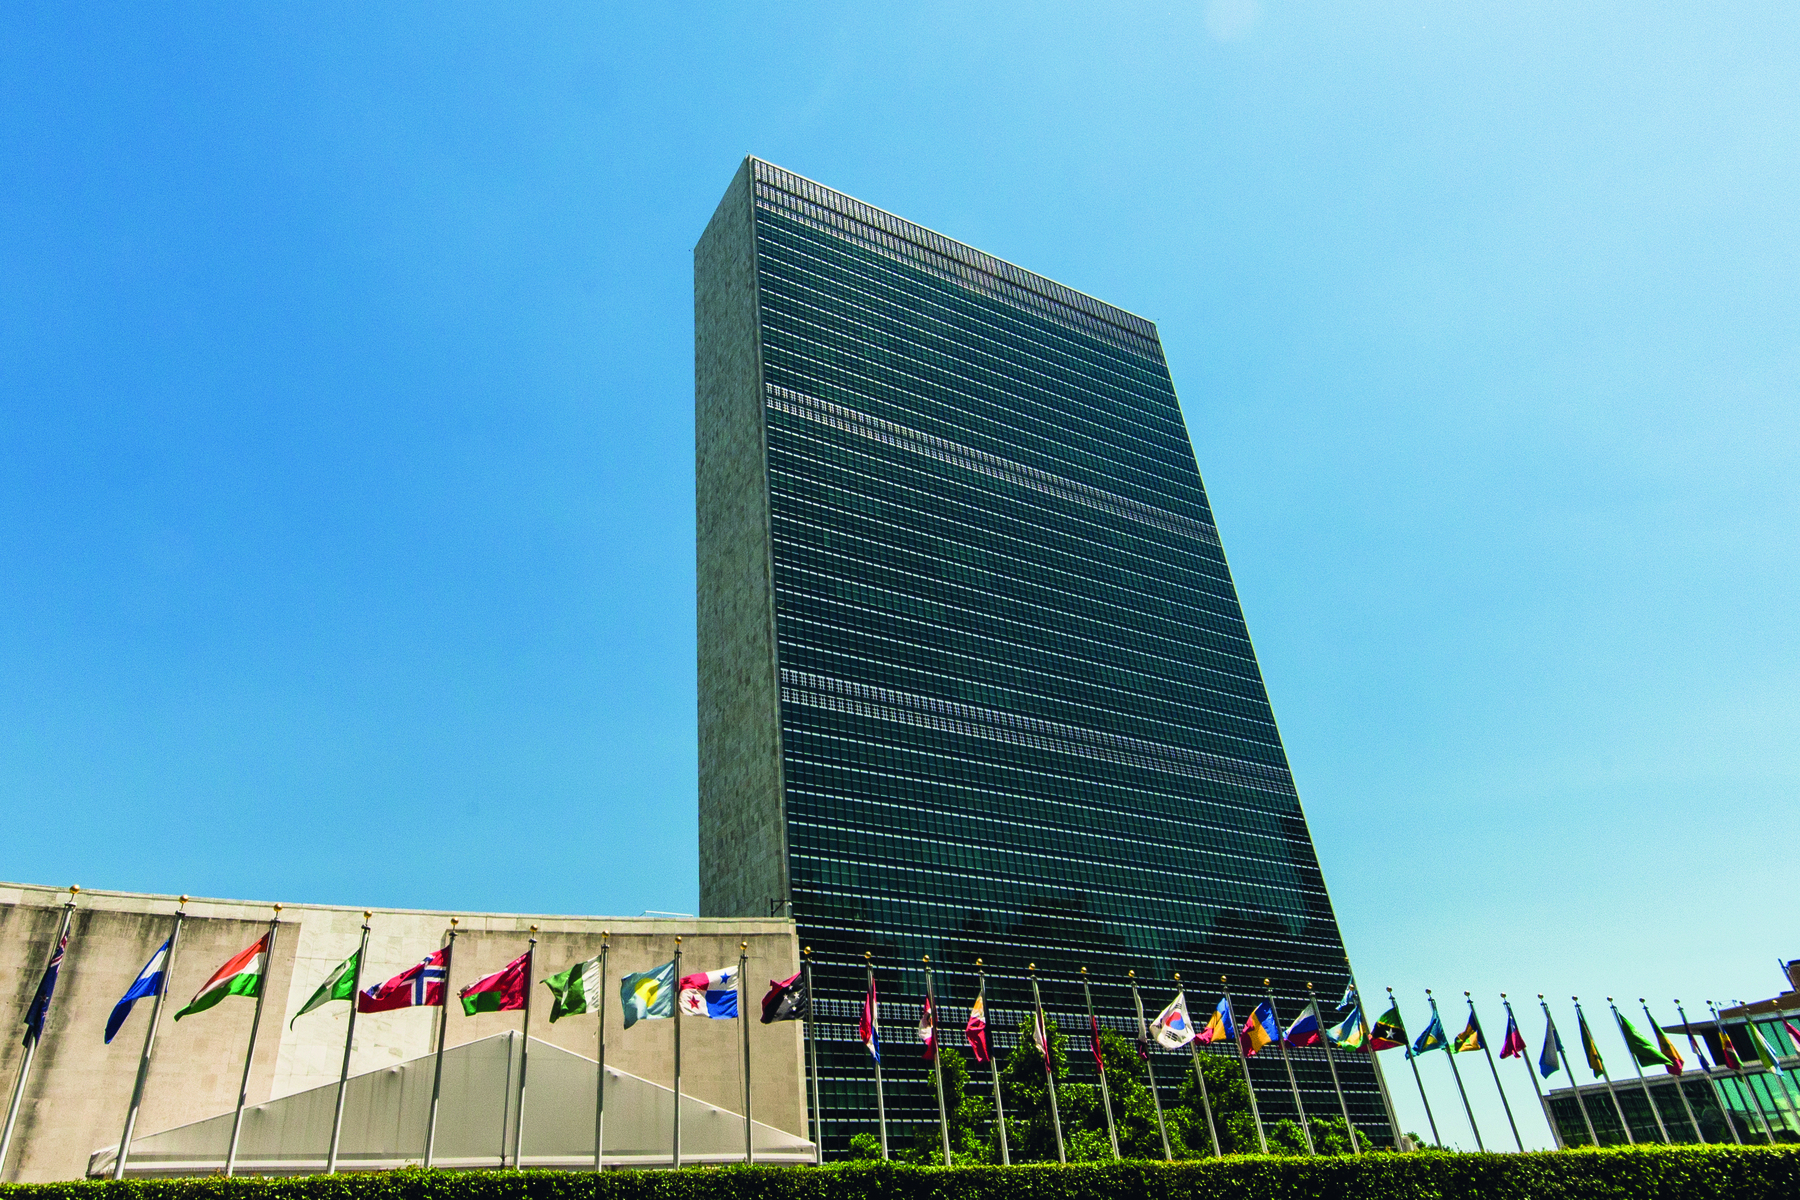 Fotografia. Fachada de um edifício alto, à sua frente, bandeiras hasteadas de diversos países.